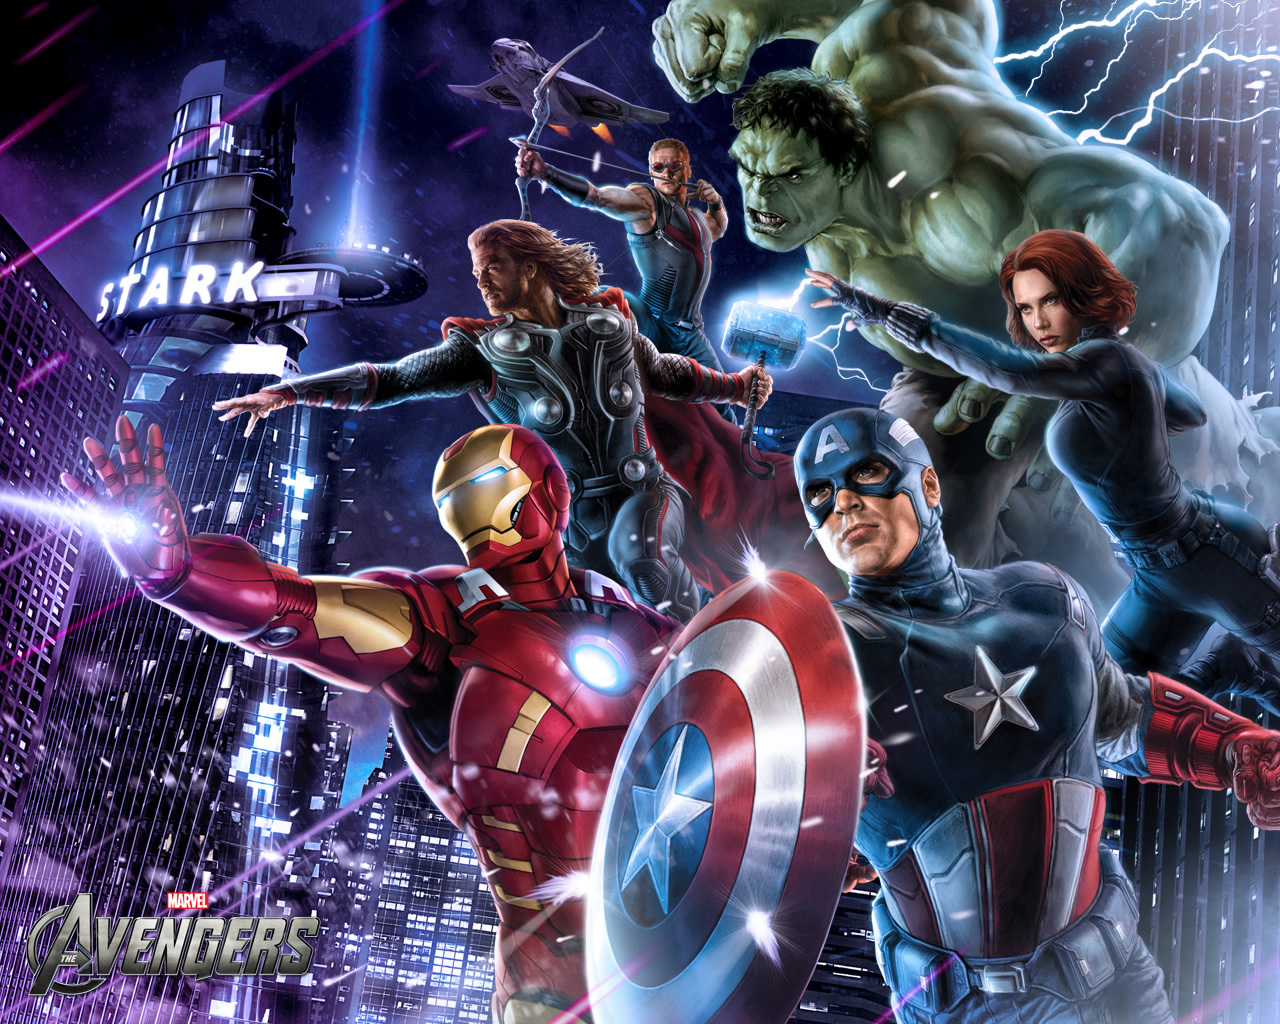 "The Avengers" (The Avengers) elegida la película mas 